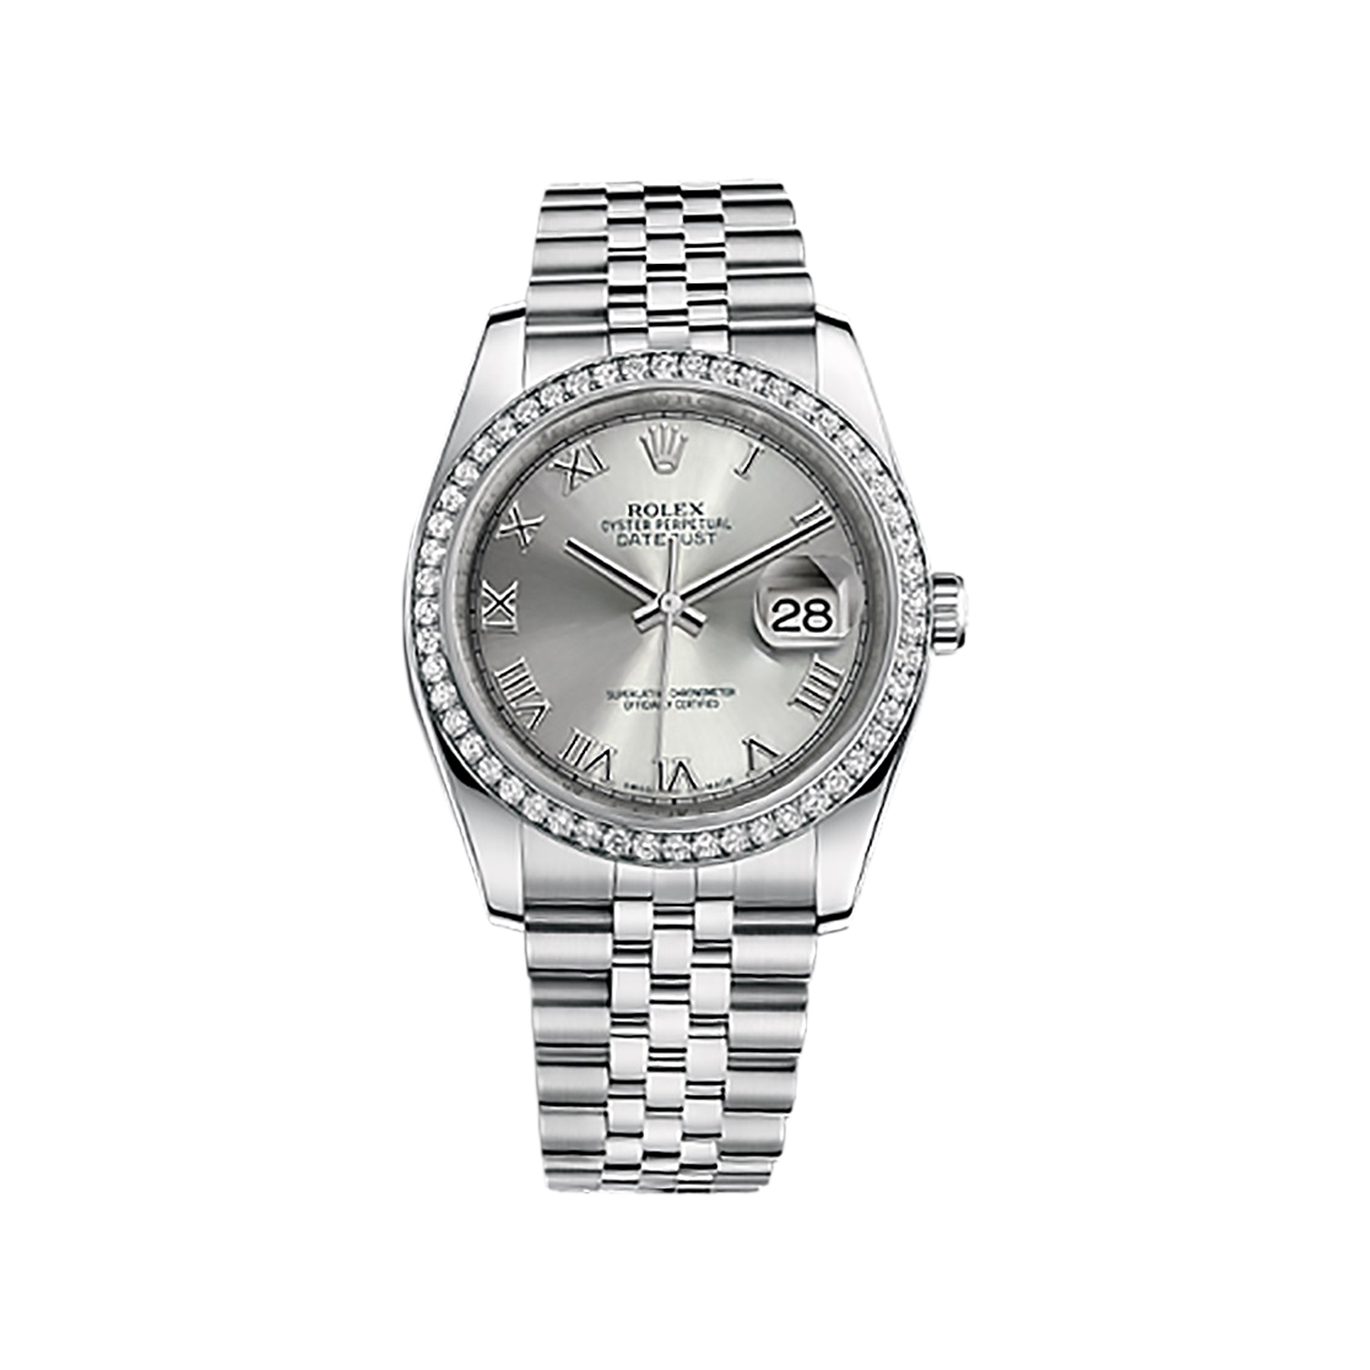 Datejust 36 116244 White Gold & Stainless Steel Watch (Rhodium)